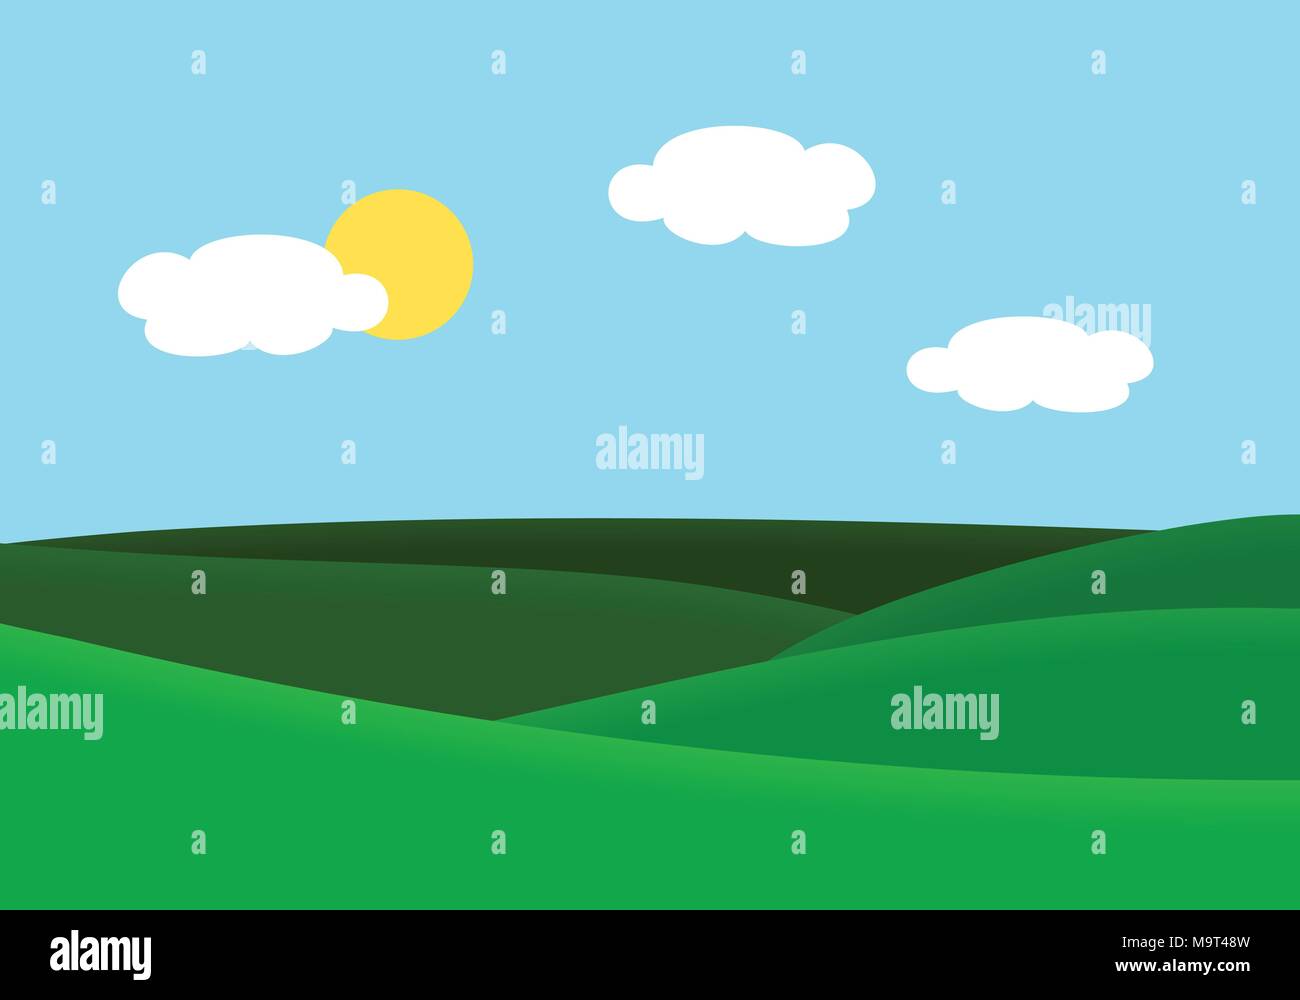 Flaches Design Abbildung: Landschaft mit Wiese und Hügel unter blauen Himmel mit Sonne und Wolken - Vektor Stock Vektor